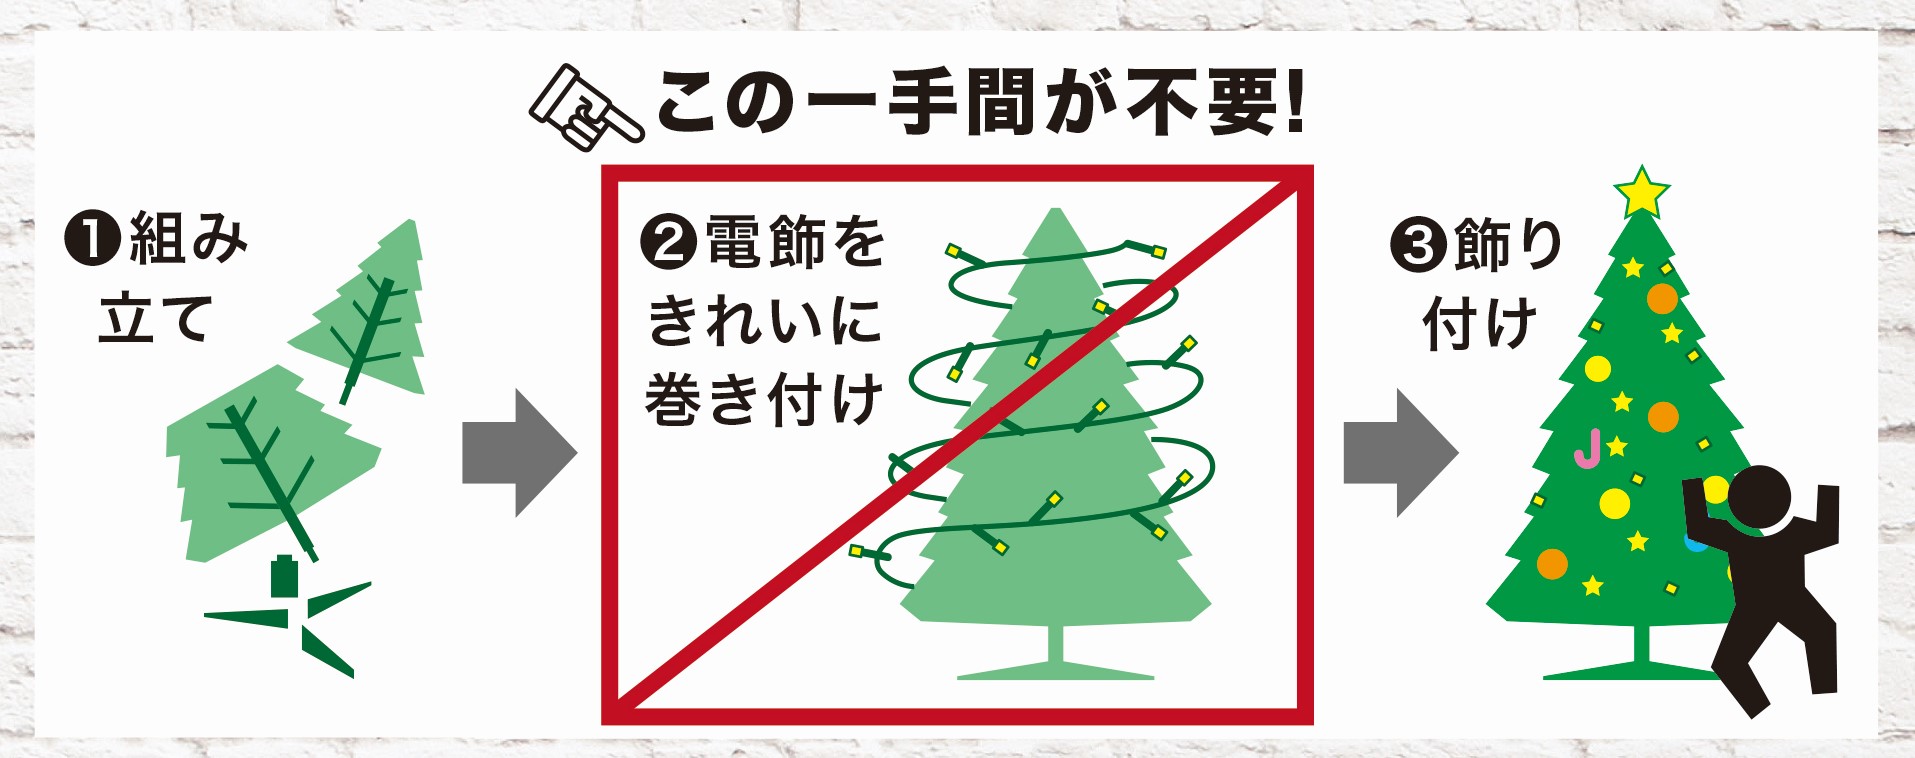 【クリスマス】最新クリスマスツリーのトレンドと子供と選ぶおすすめクリスマスアイテムの選び方9選